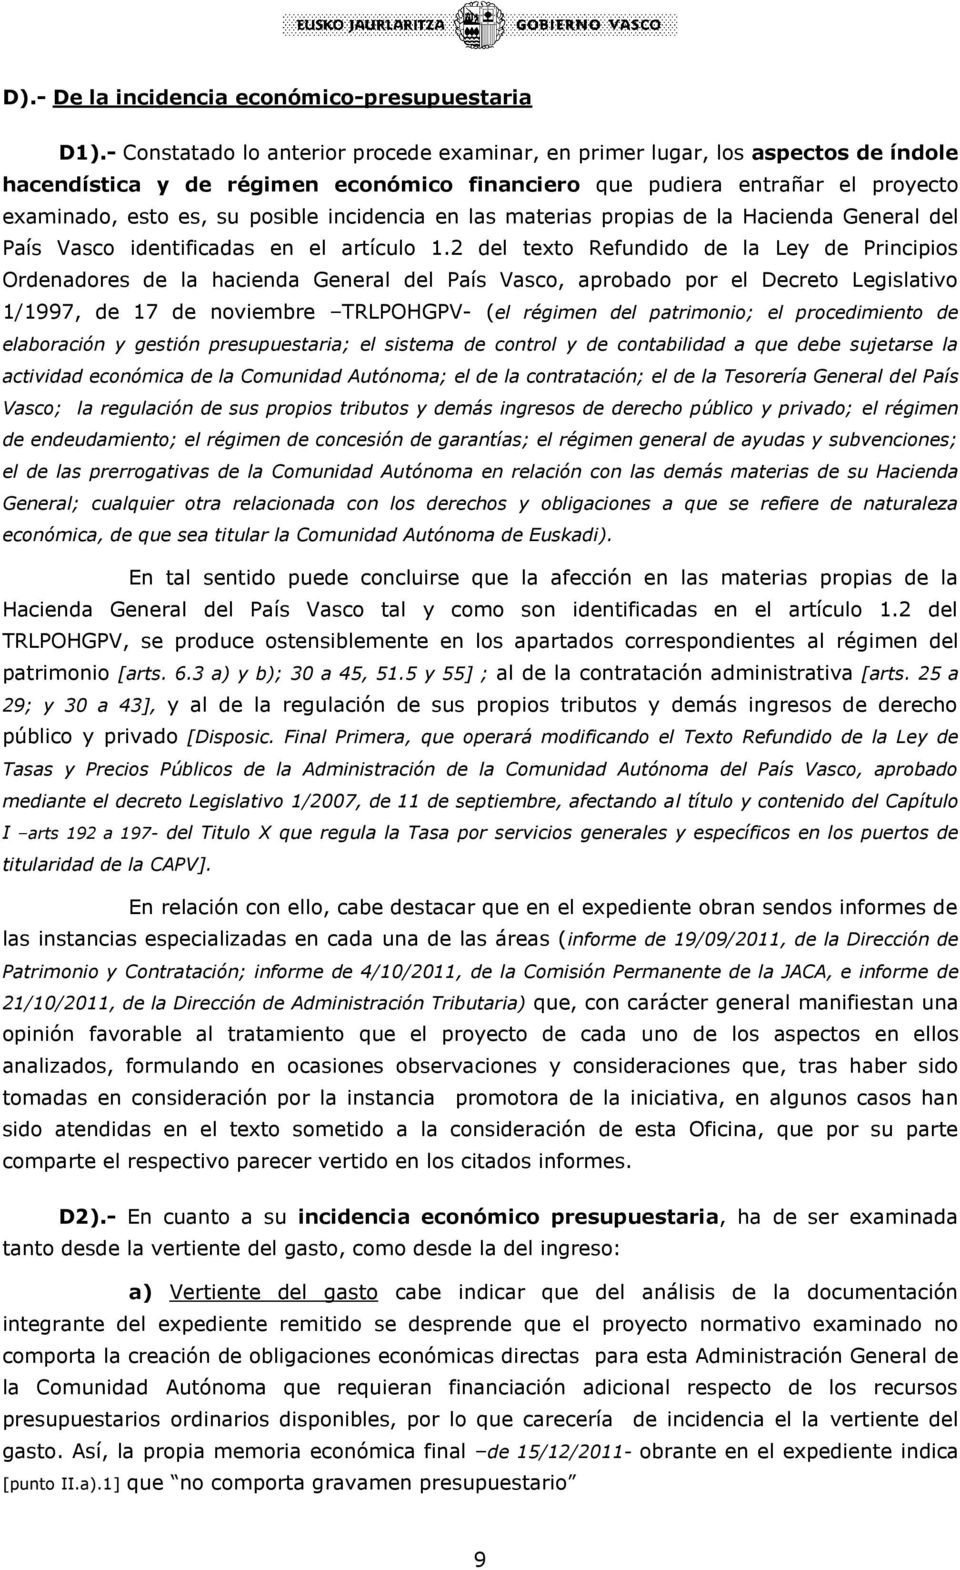 incidencia en las materias propias de la Hacienda General del País Vasco identificadas en el artículo 1.